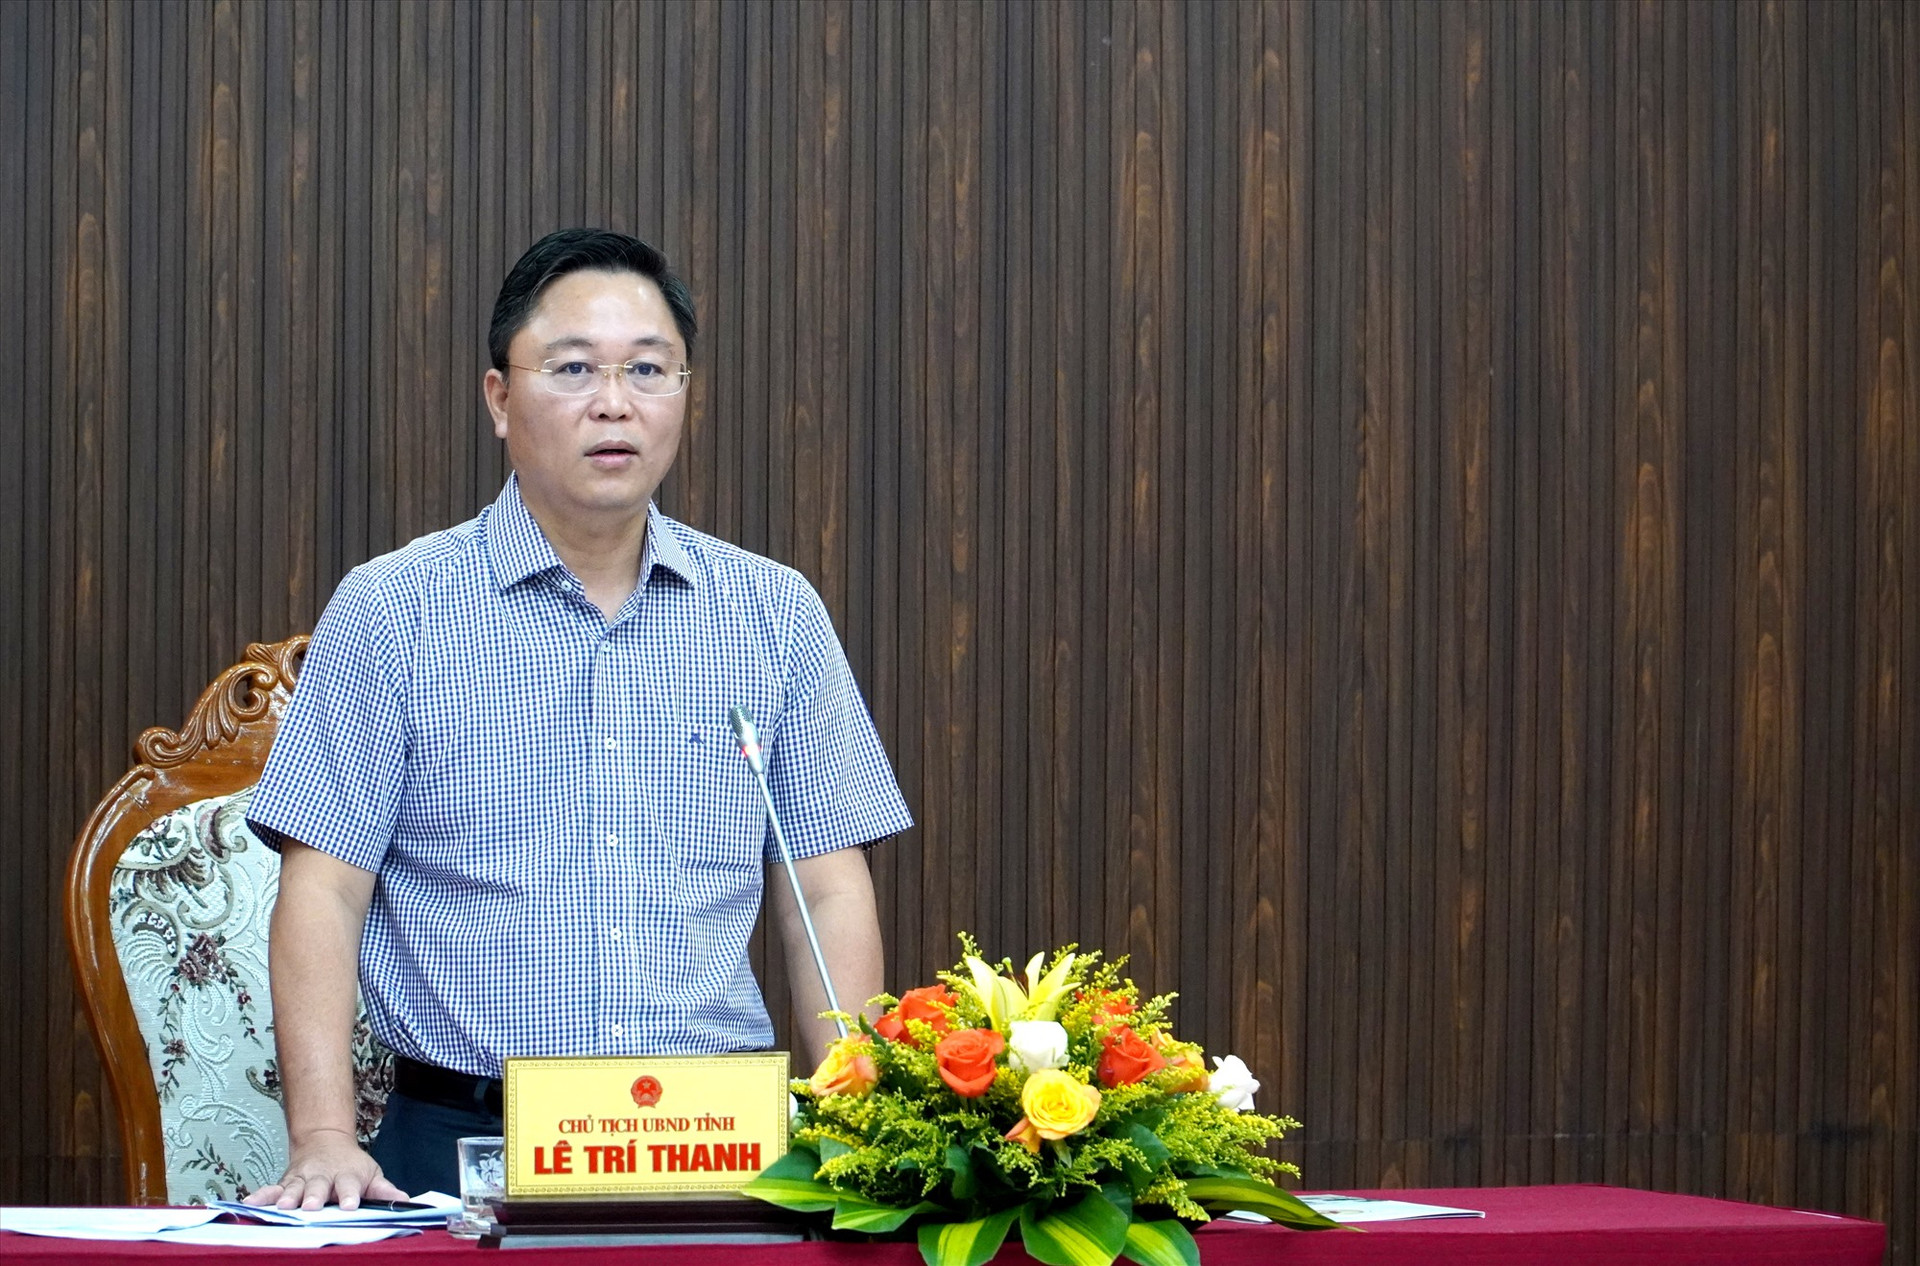 Chủ tịch UBND tỉnh Lê Trí Thanh phát biểu khai mạc buổi đối thoại. Ảnh: Q.A